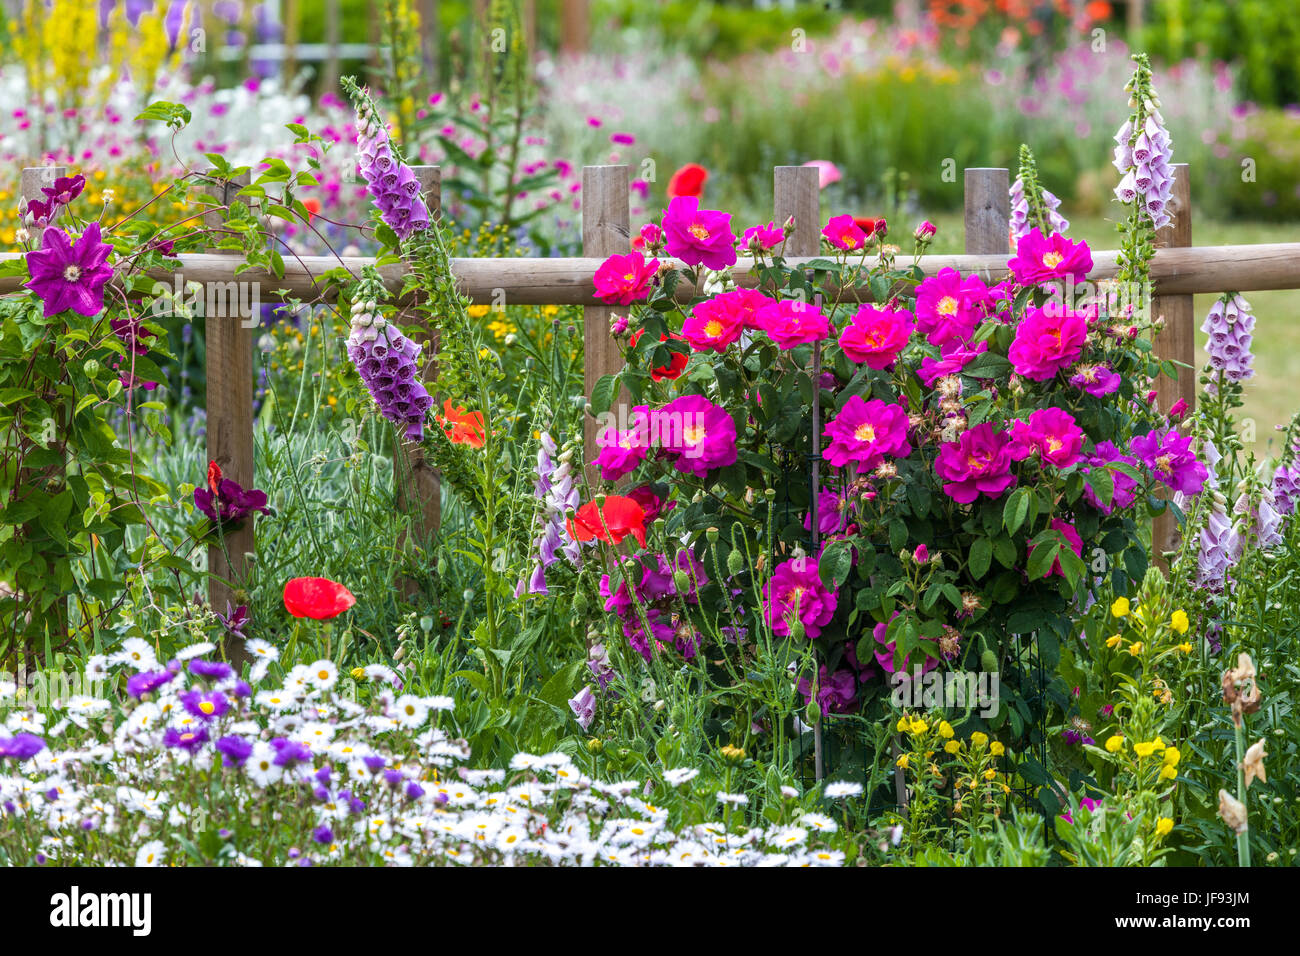 Sommer Garten und gemischte Blumen im Juni, Rosa 'Louis Philippe', Digitalis, Erigeron, Mohn, Holz Garten Zaun, schöner Garten Blumen Stockfoto